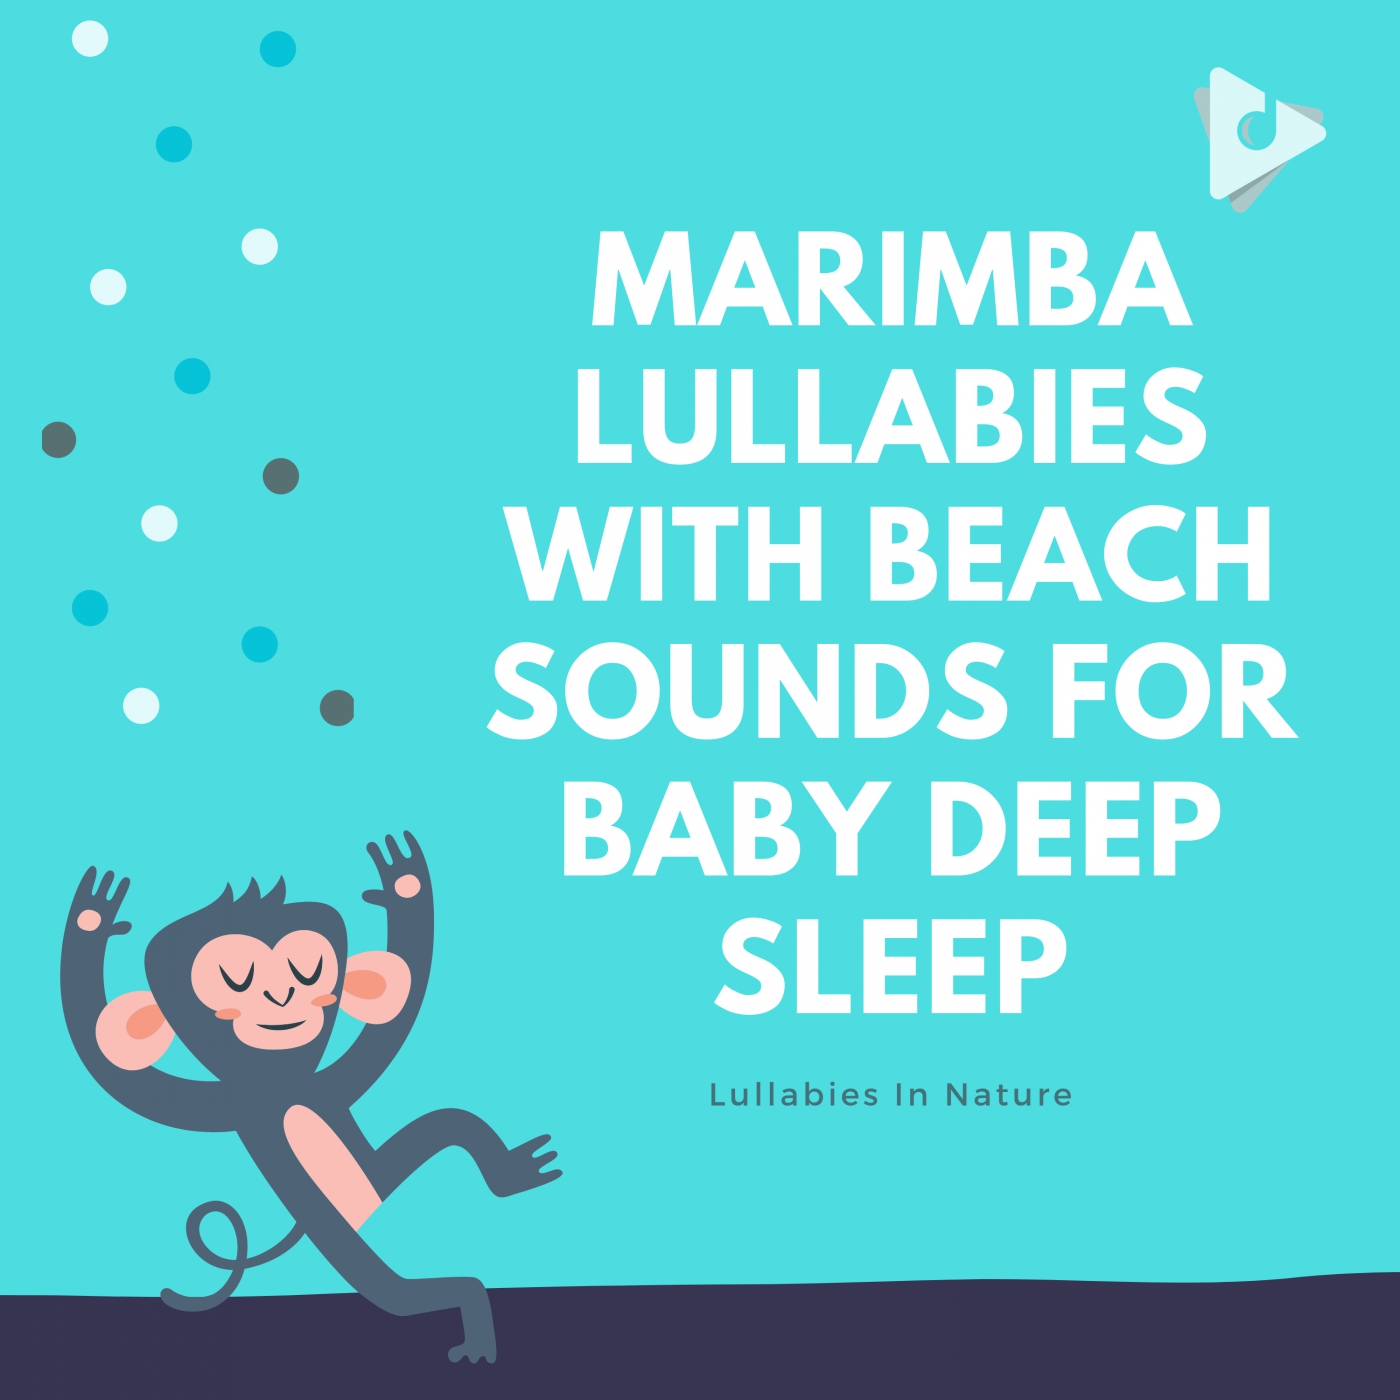 Marimba Lullabies with Beach Sounds for Baby Deep Sleep